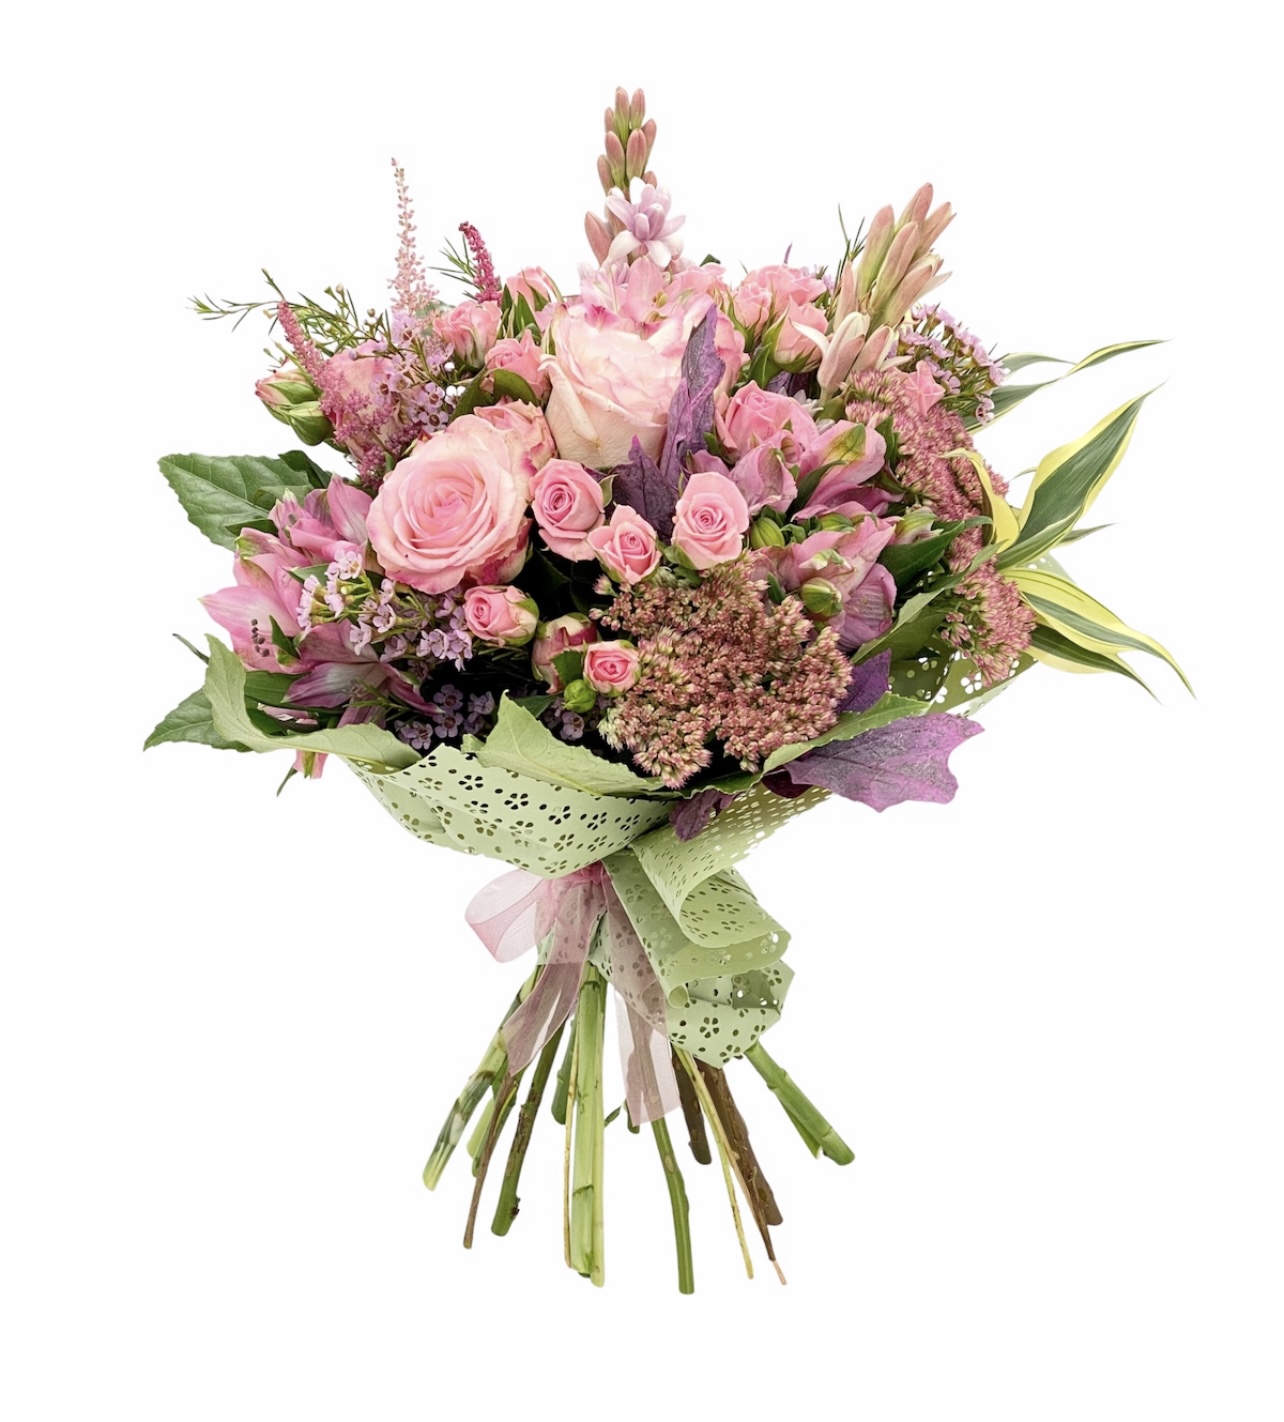 Buchet special cu flori roz: Alstroemerii